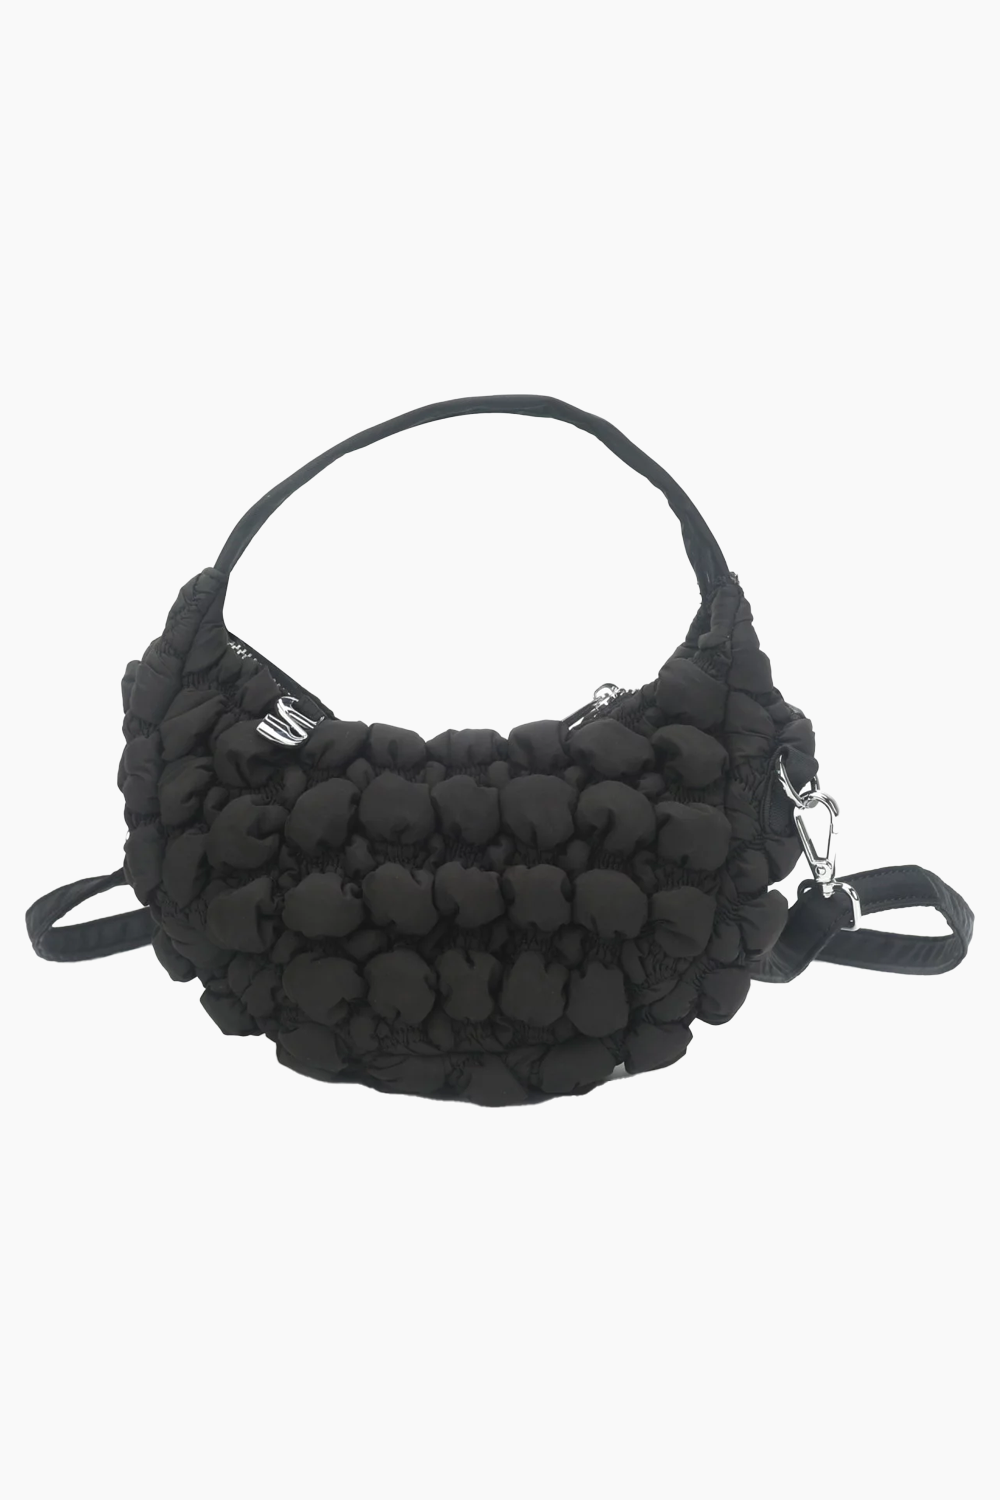 Mona Handbag - Black - Silfen Studio